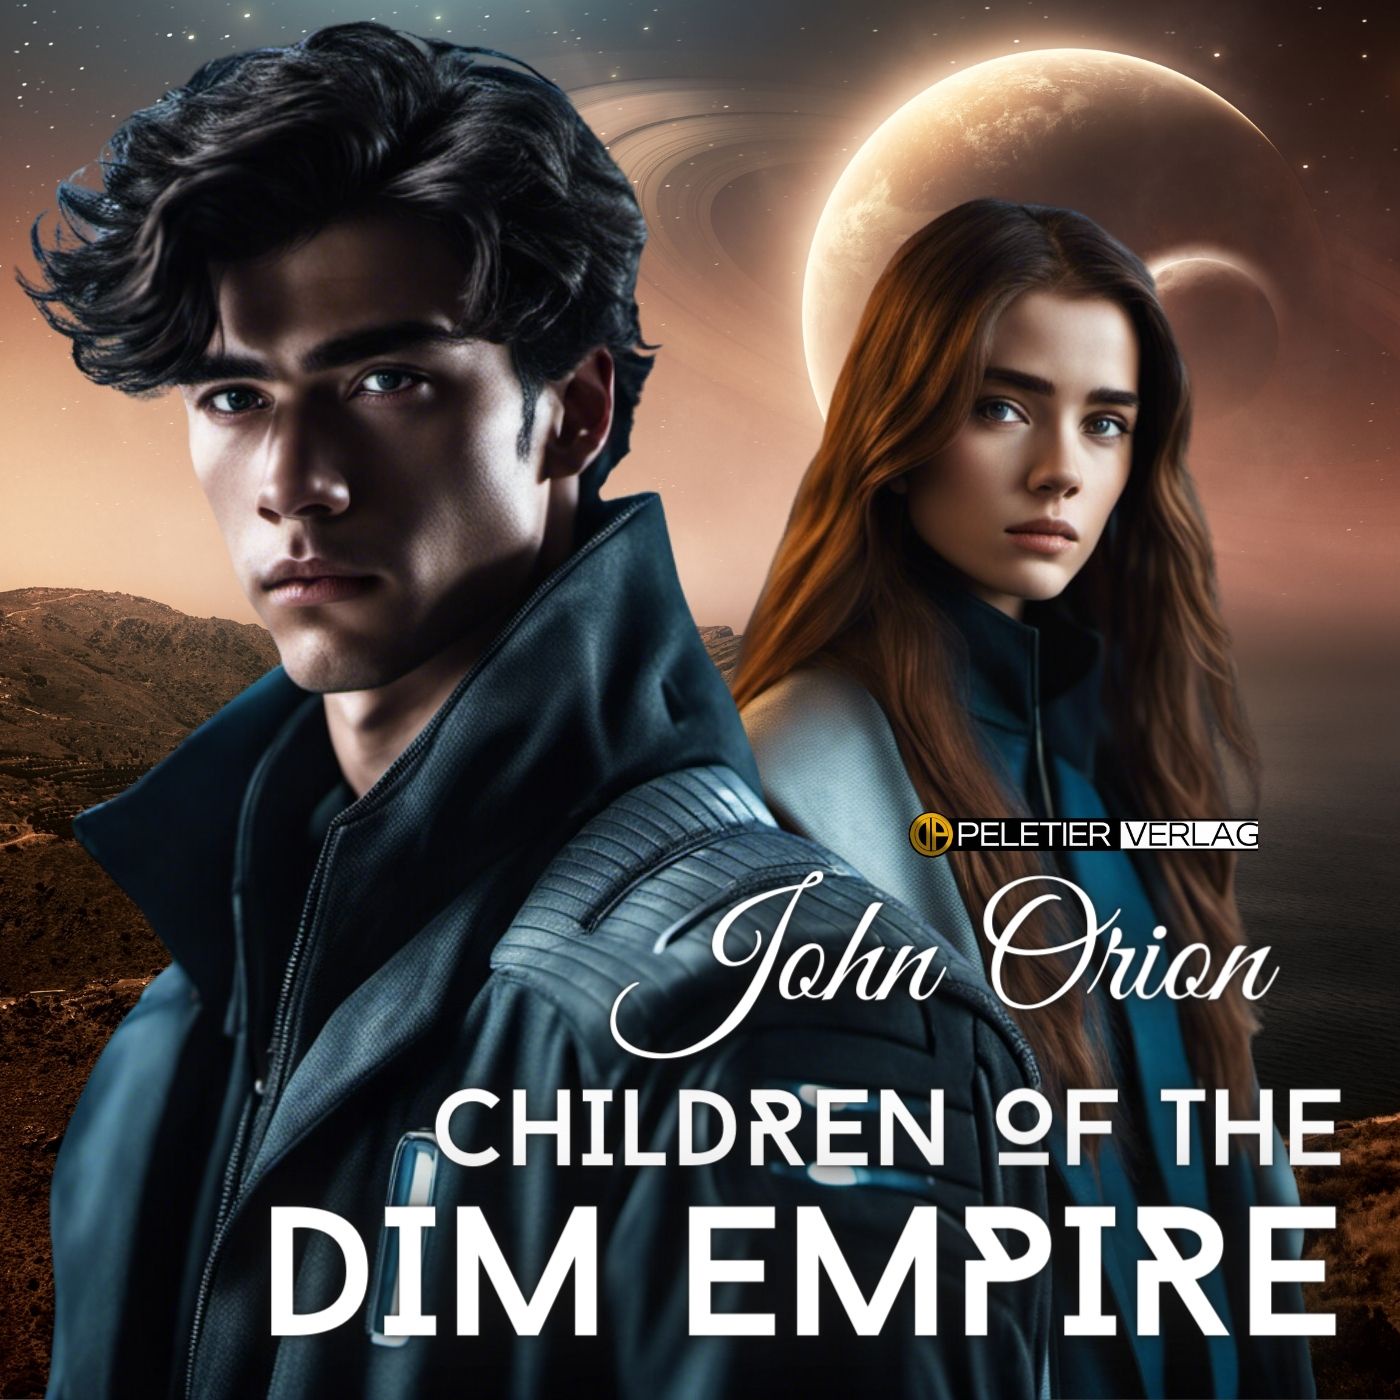 TRAILER John Orion - Children of the Dim Empire